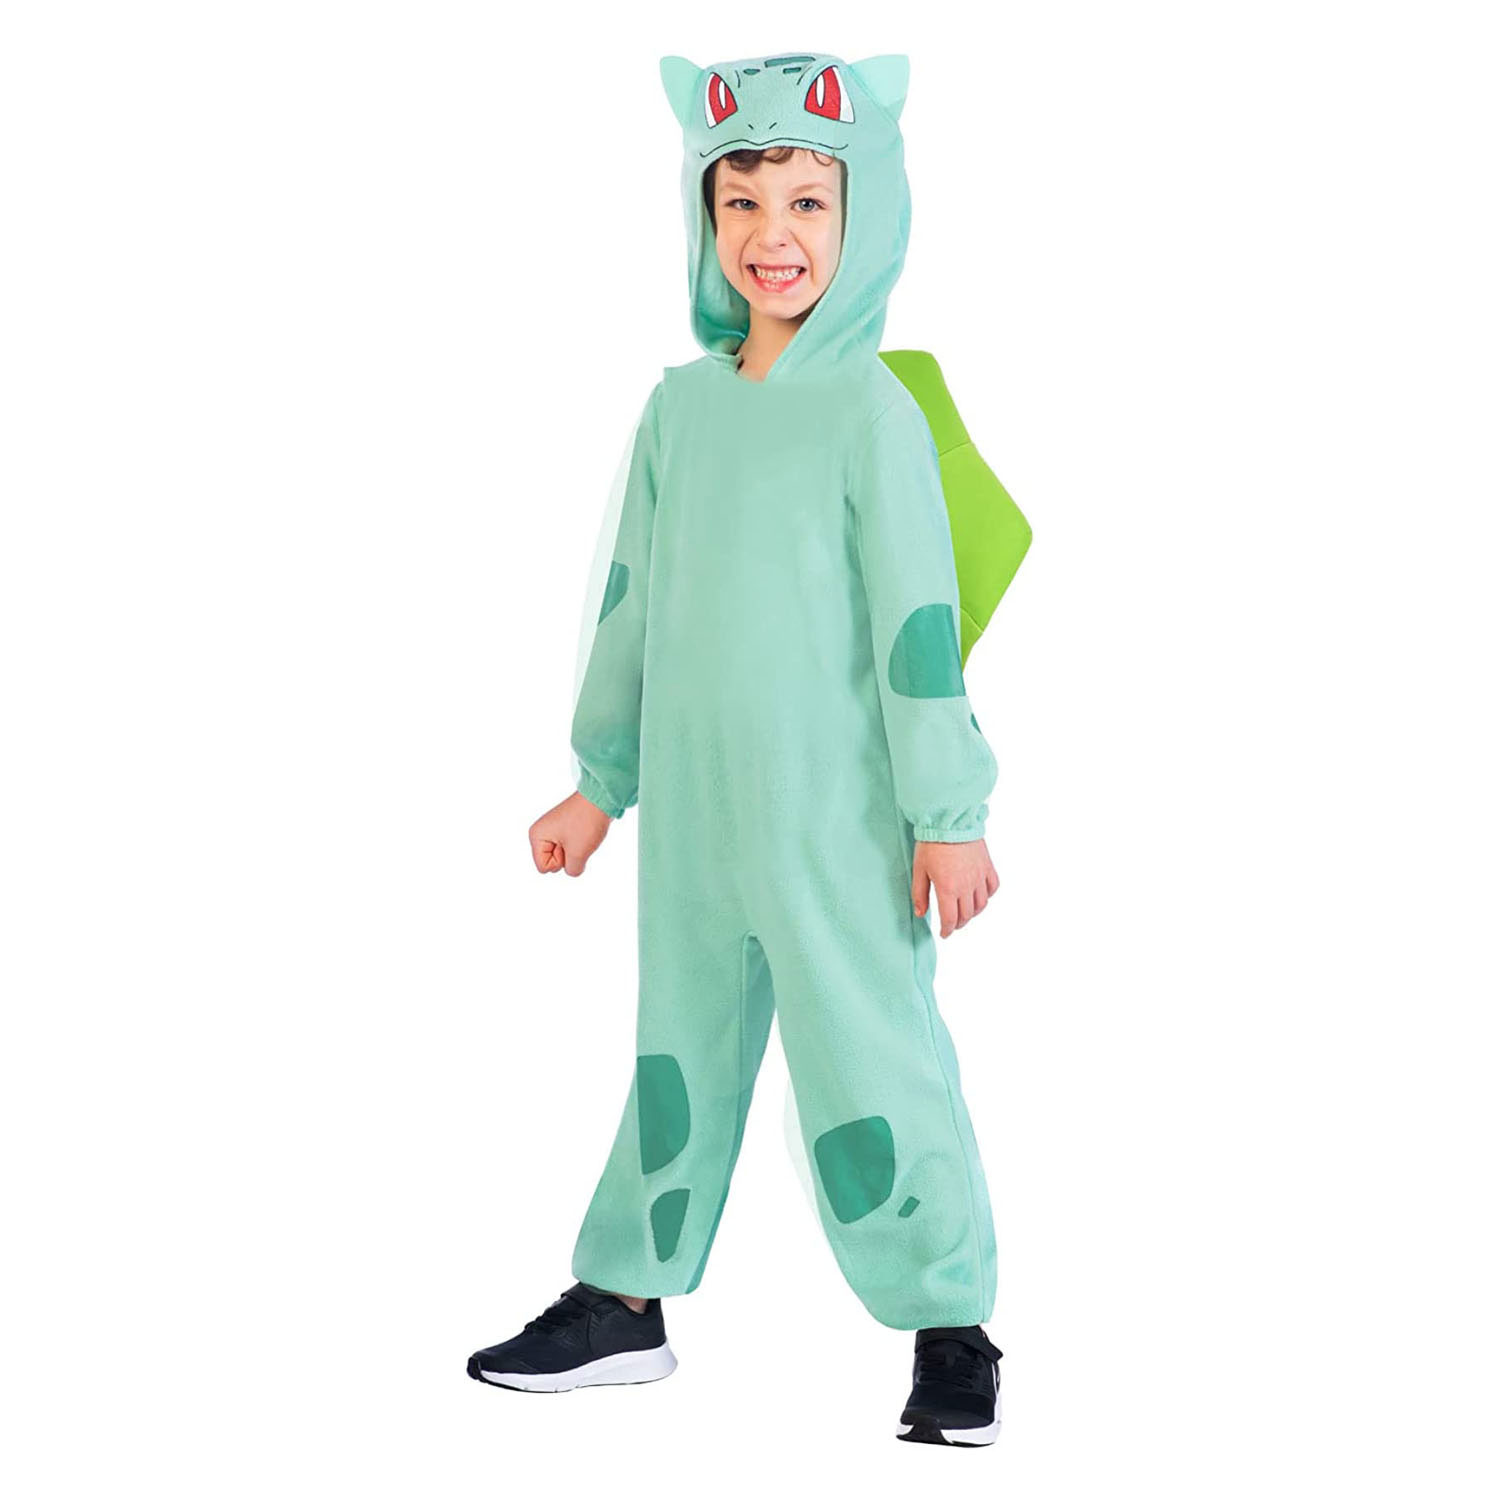 Costume enfant - Docteur: Vert (5-6 ans) - Déguisements